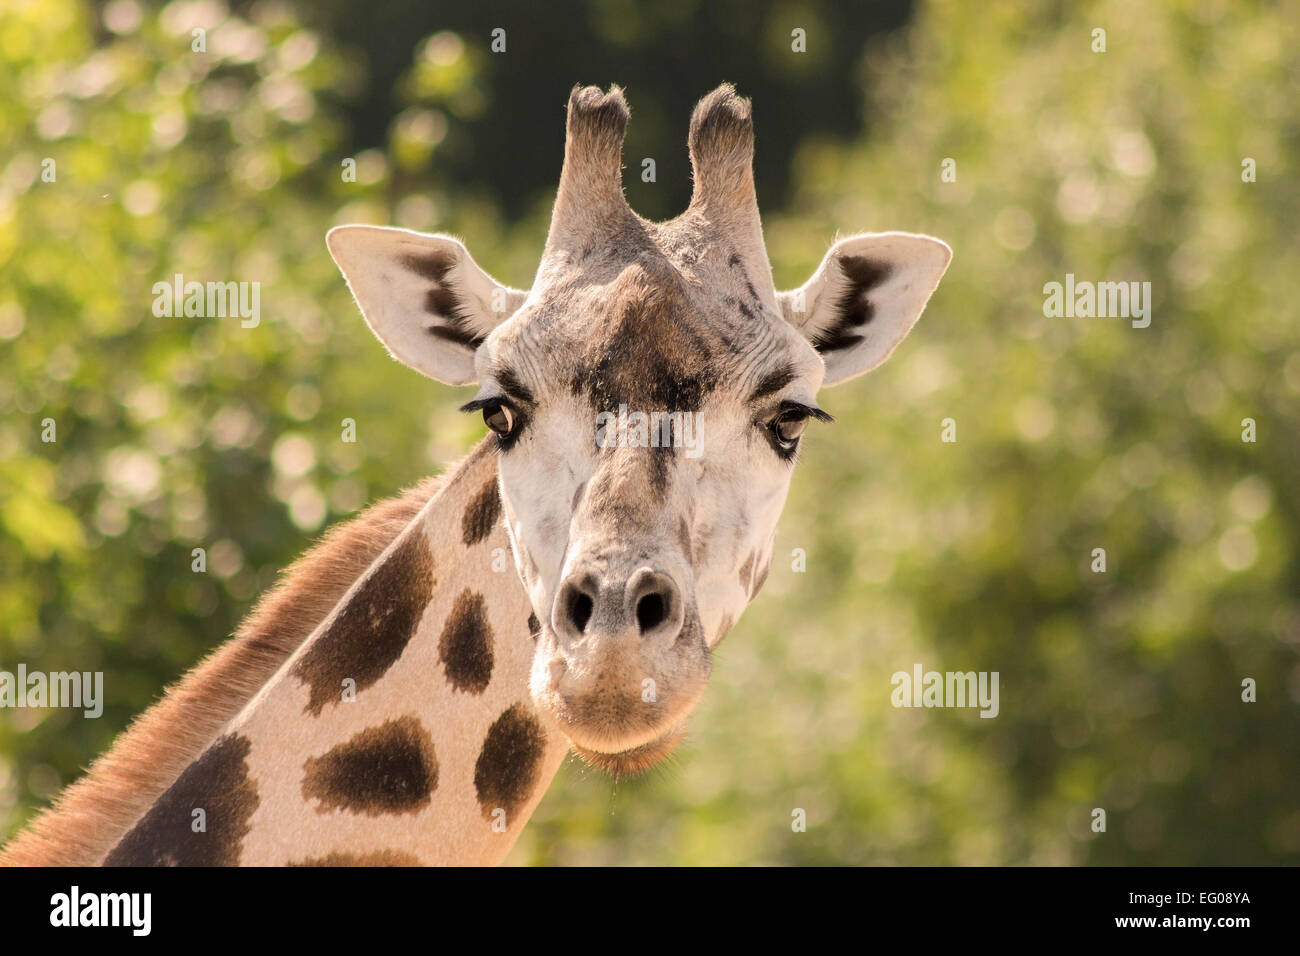 Giraffe eng mit Blick auf einen Fotografen gegen funkelnden grünen Hintergrund. Stockfoto